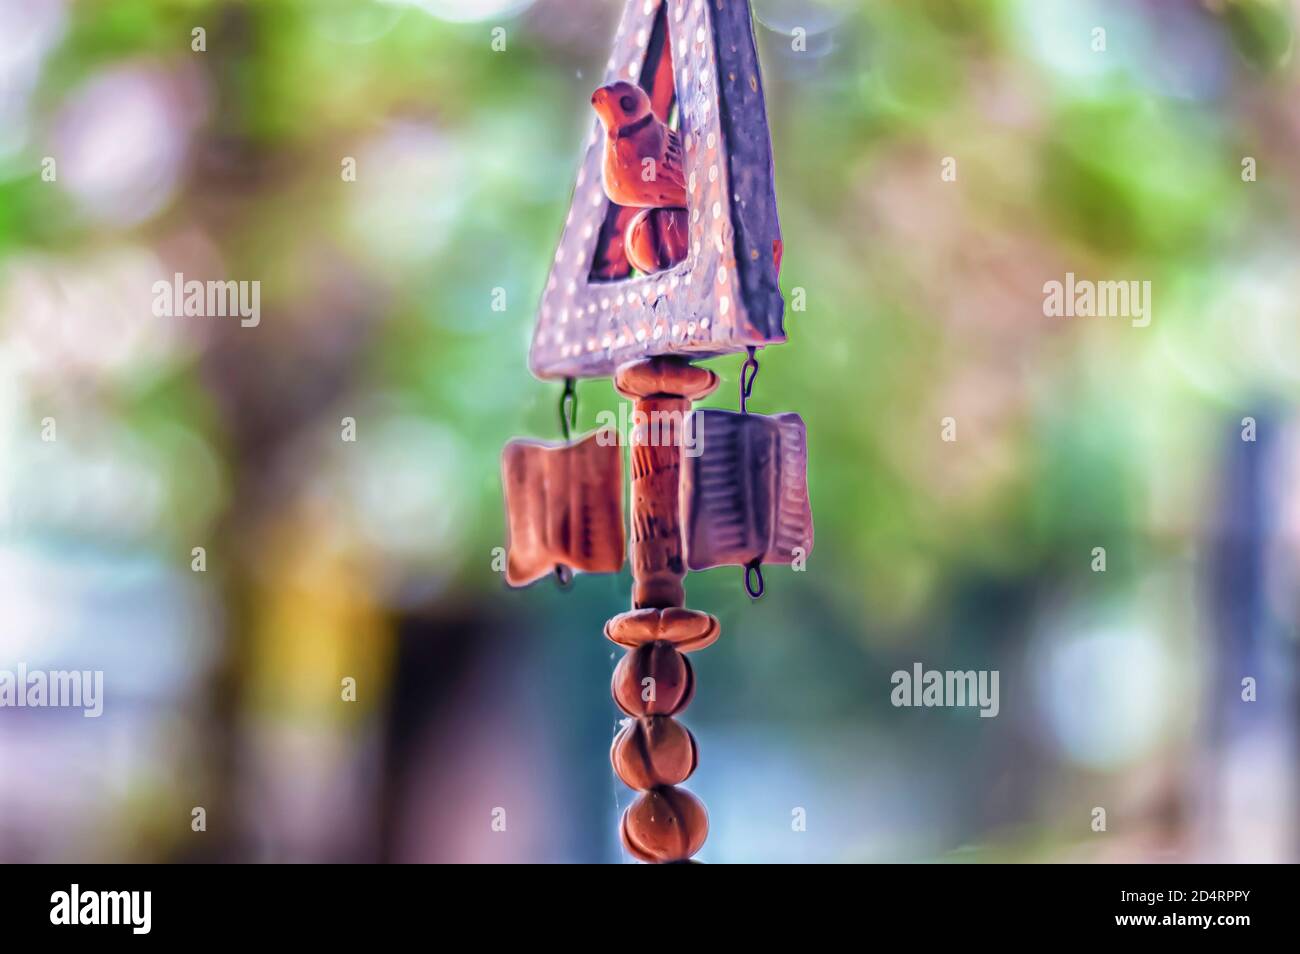 Ein Keramik-/Terrakotta-Gartenartefakt, das Tonkugeln und einen Tonvogel enthält, wird durch eine Schnur in der Luft aufgehängt. Stockfoto